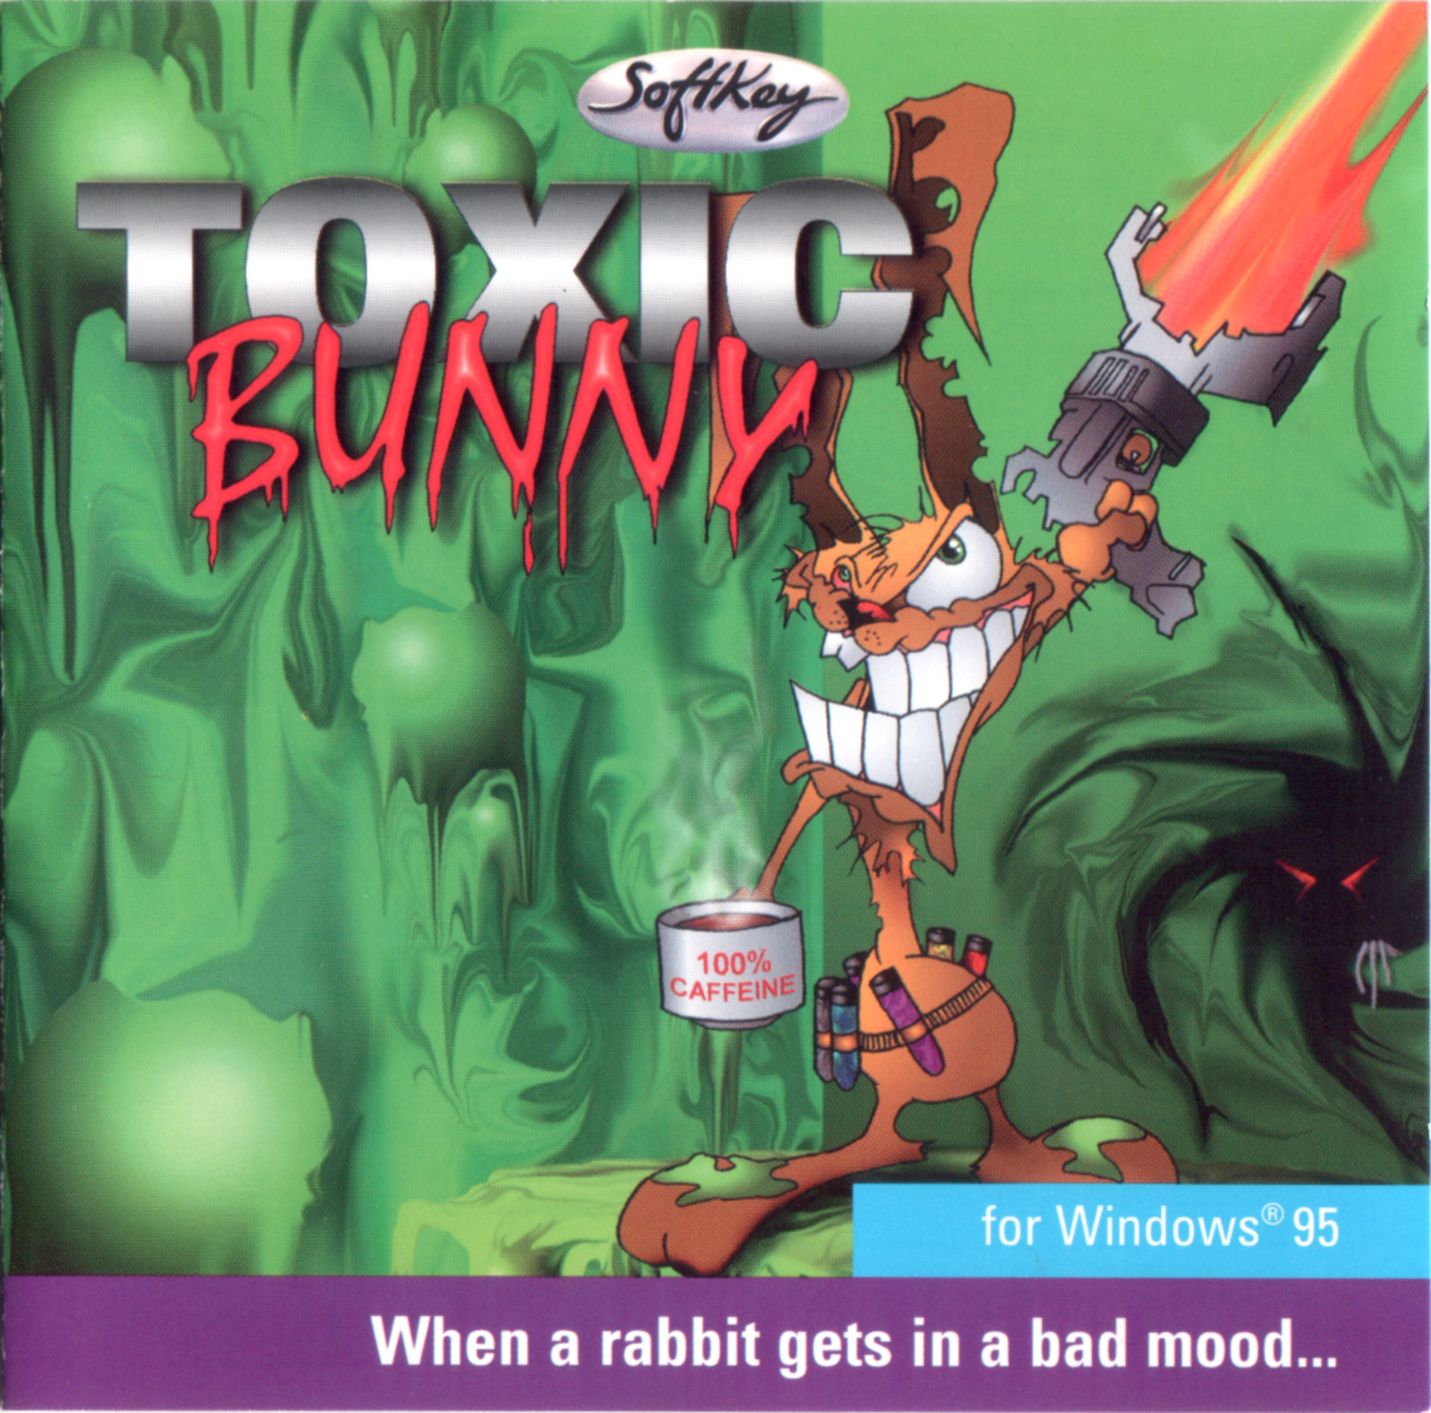 Toxic Bunny. Toxic игра. Токсичный кролик игра. Ядовитый кролик игра. Игры токсис тест